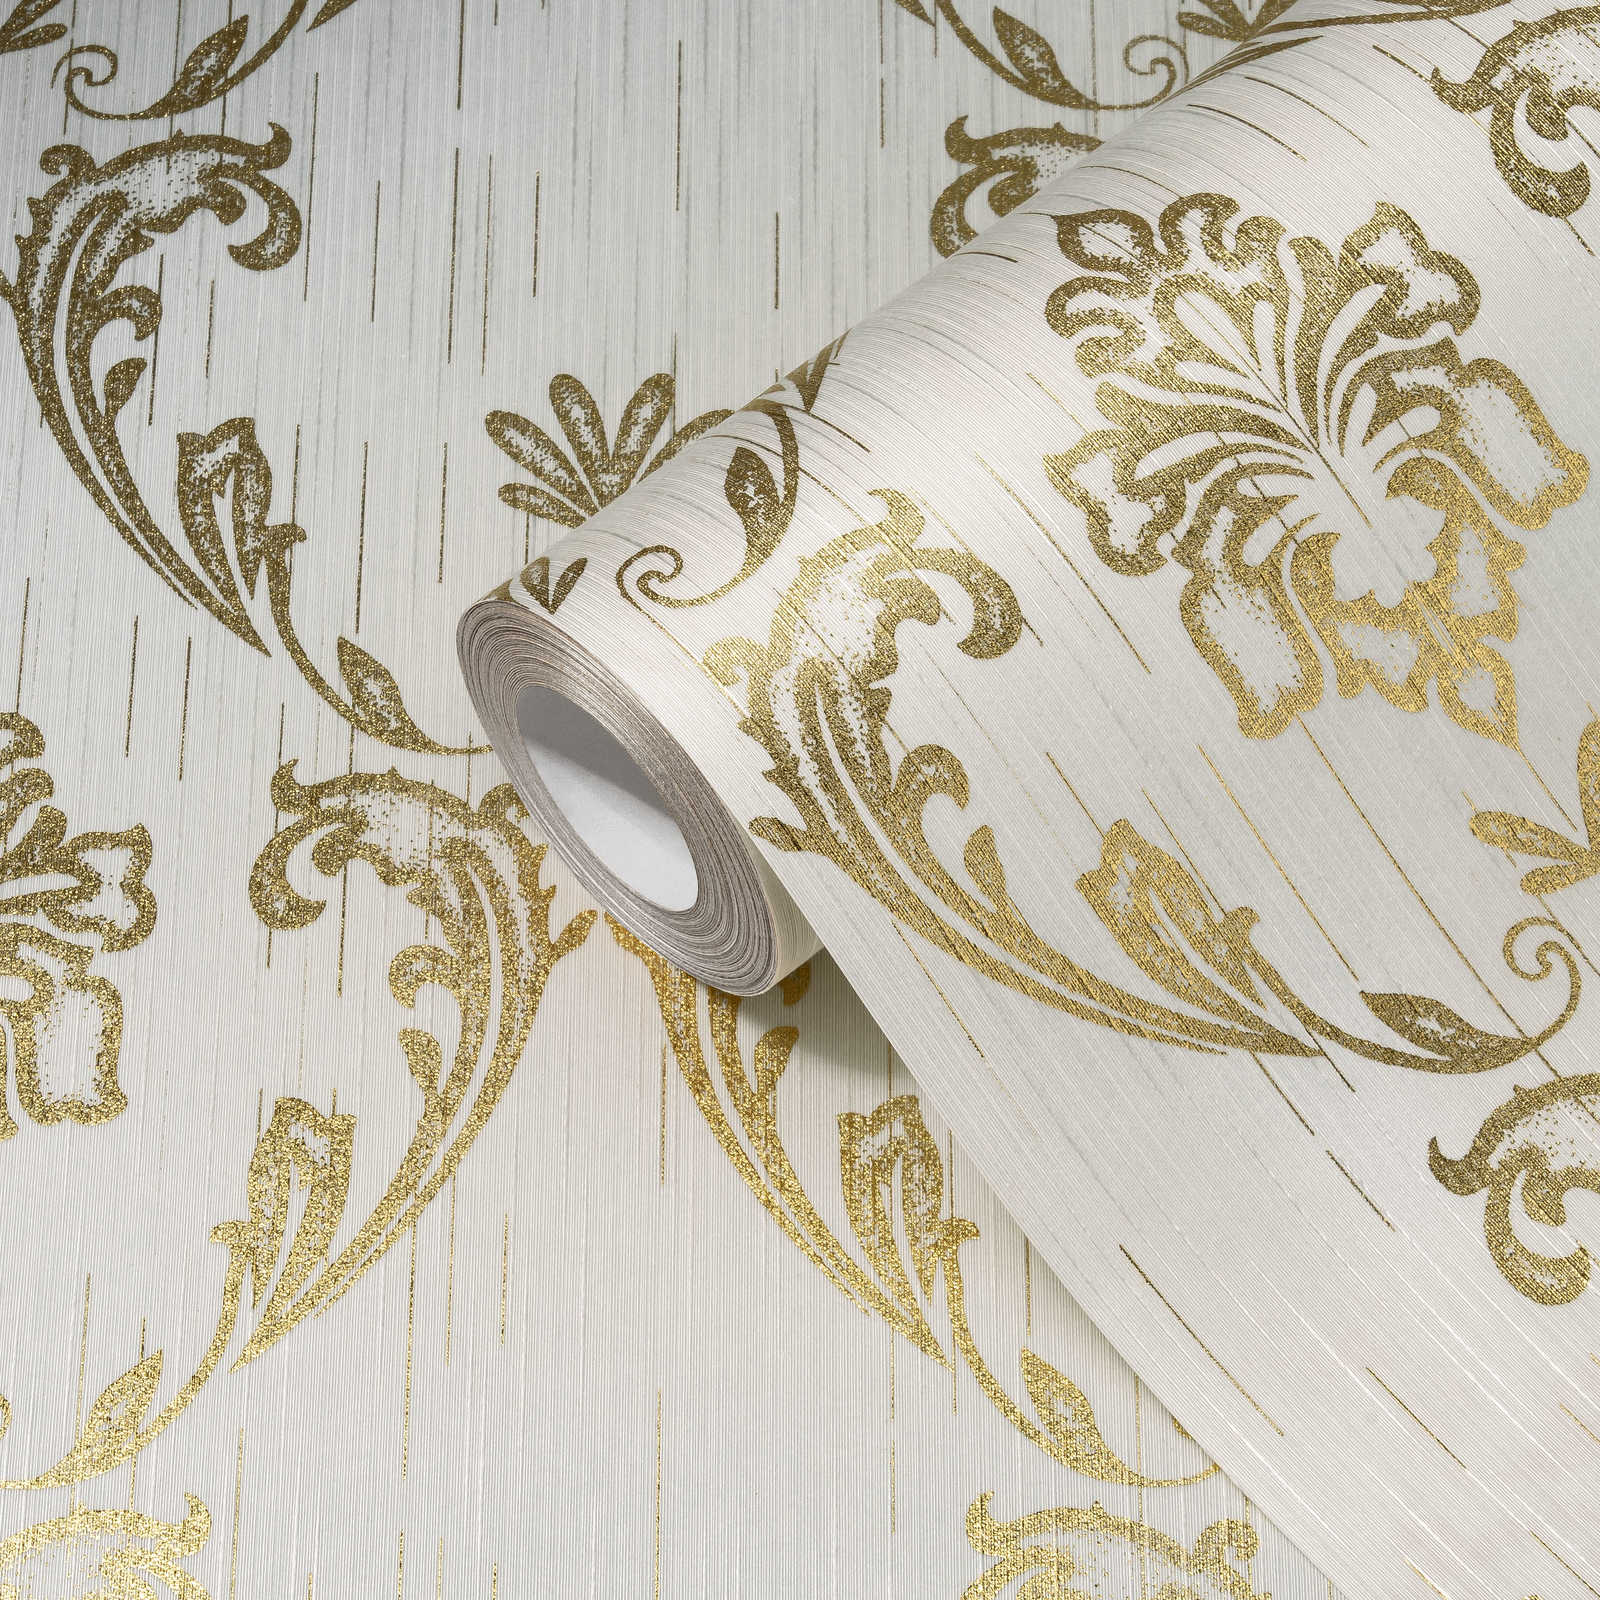             Papier peint ornemental avec éléments floraux dorés - or, blanc
        